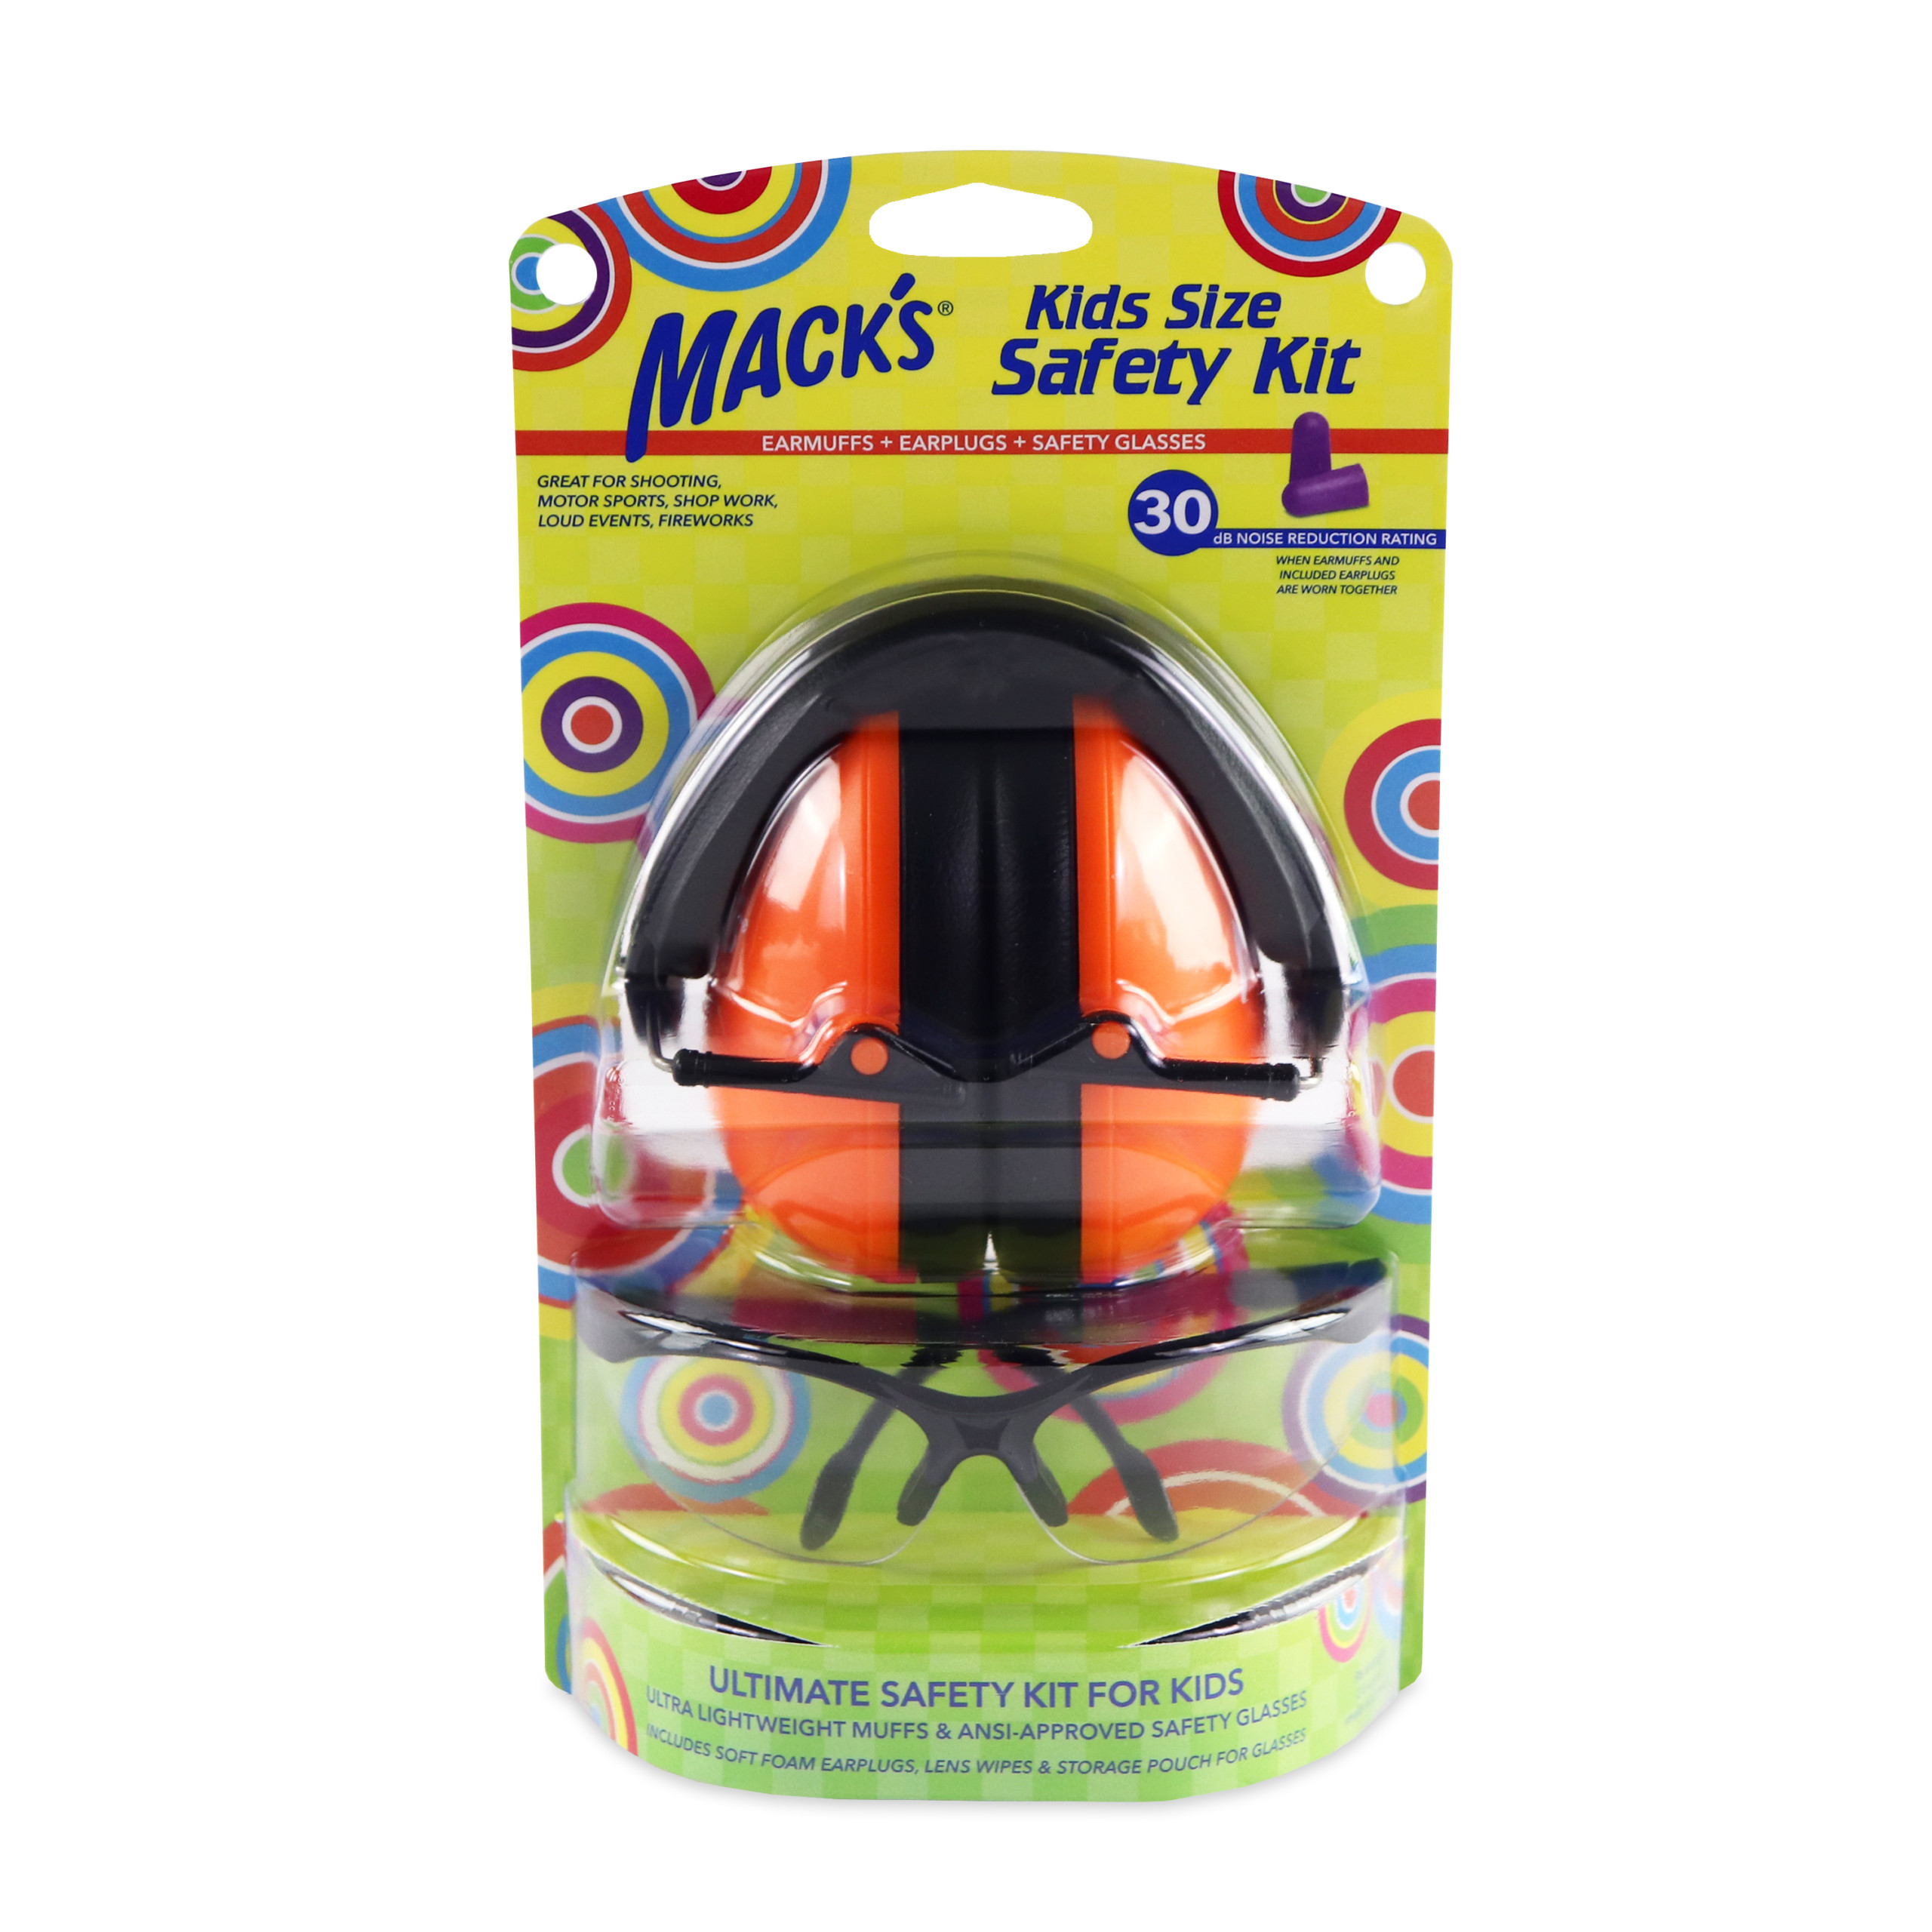 Kids Size Safety Kit - Mack's Ear Plugs